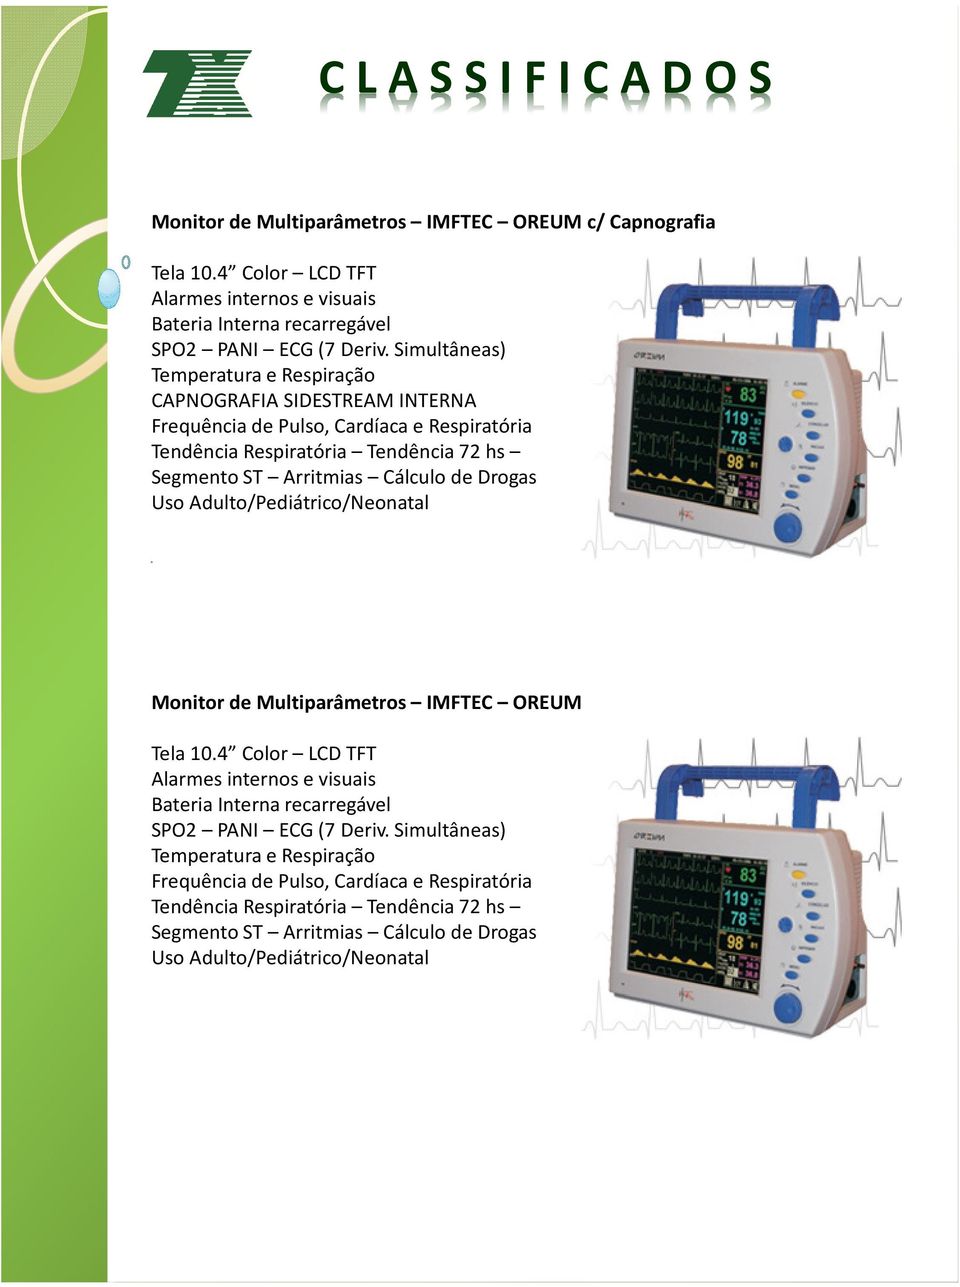 Cálculo de Drogas Uso Adulto/Pediátrico/Neonatal Monitor de Multiparâmetros IMFTEC OREUM Tela 10.